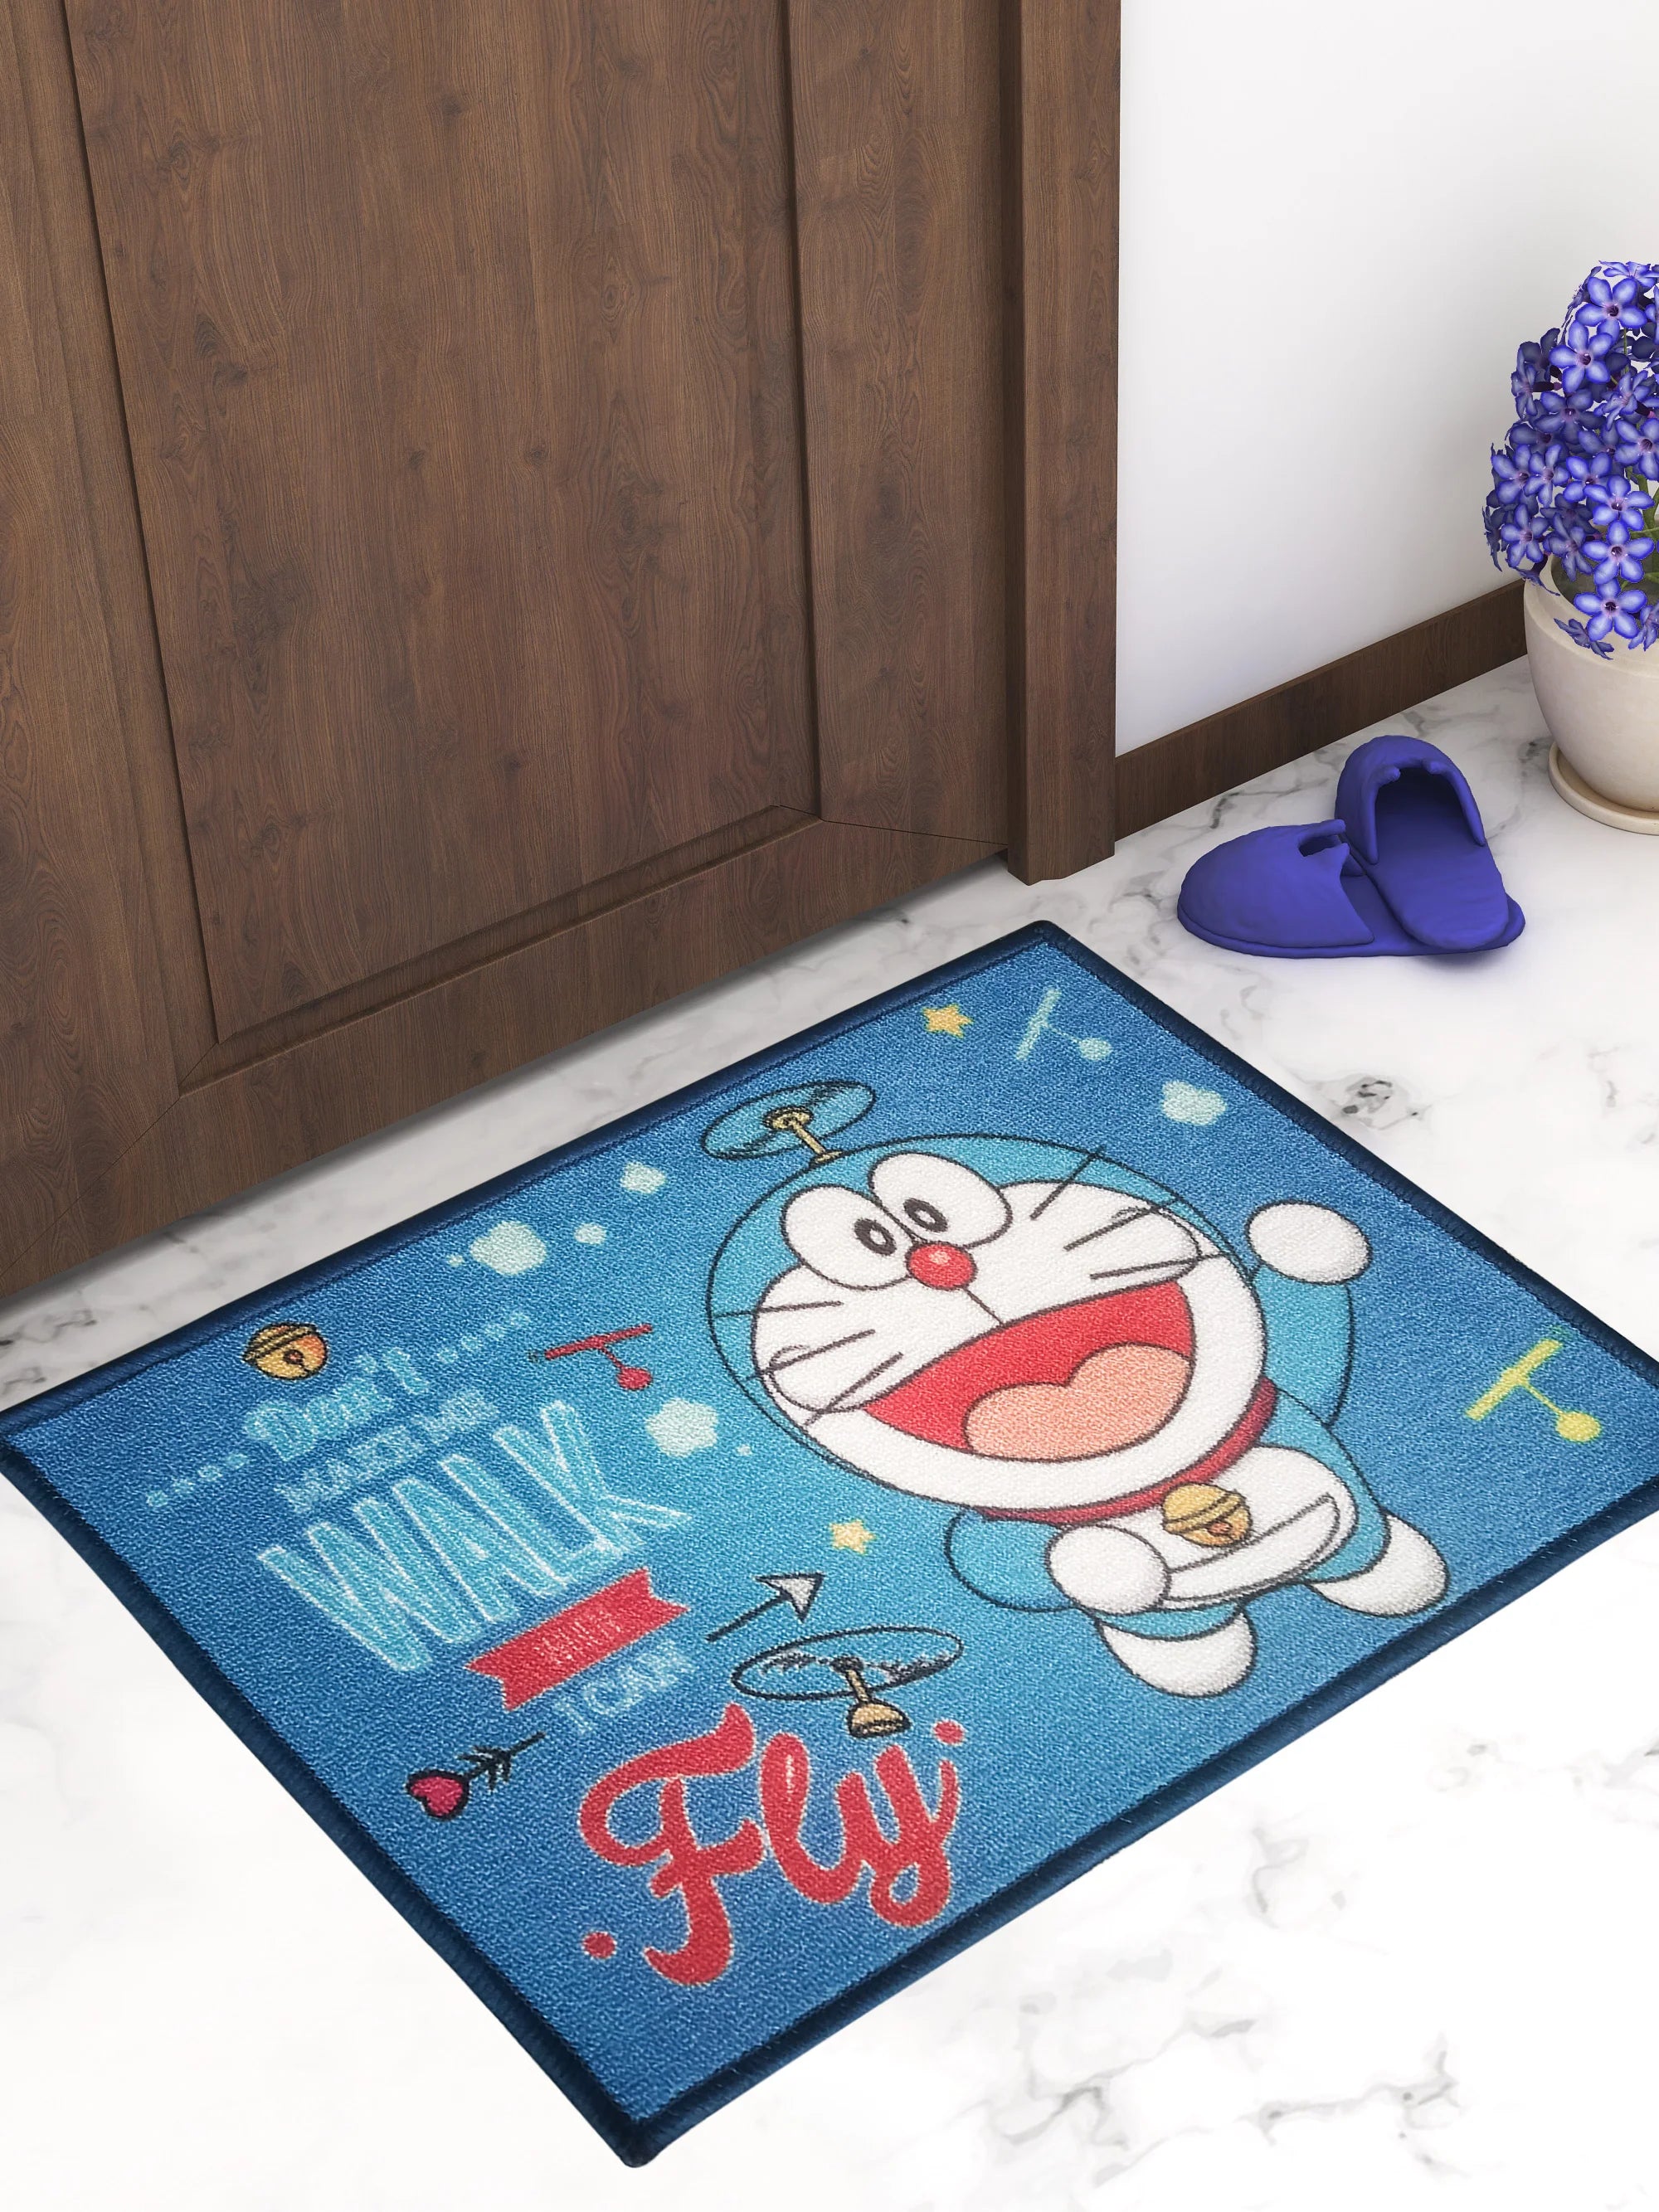 Soar into Adventures with Doraemon: 